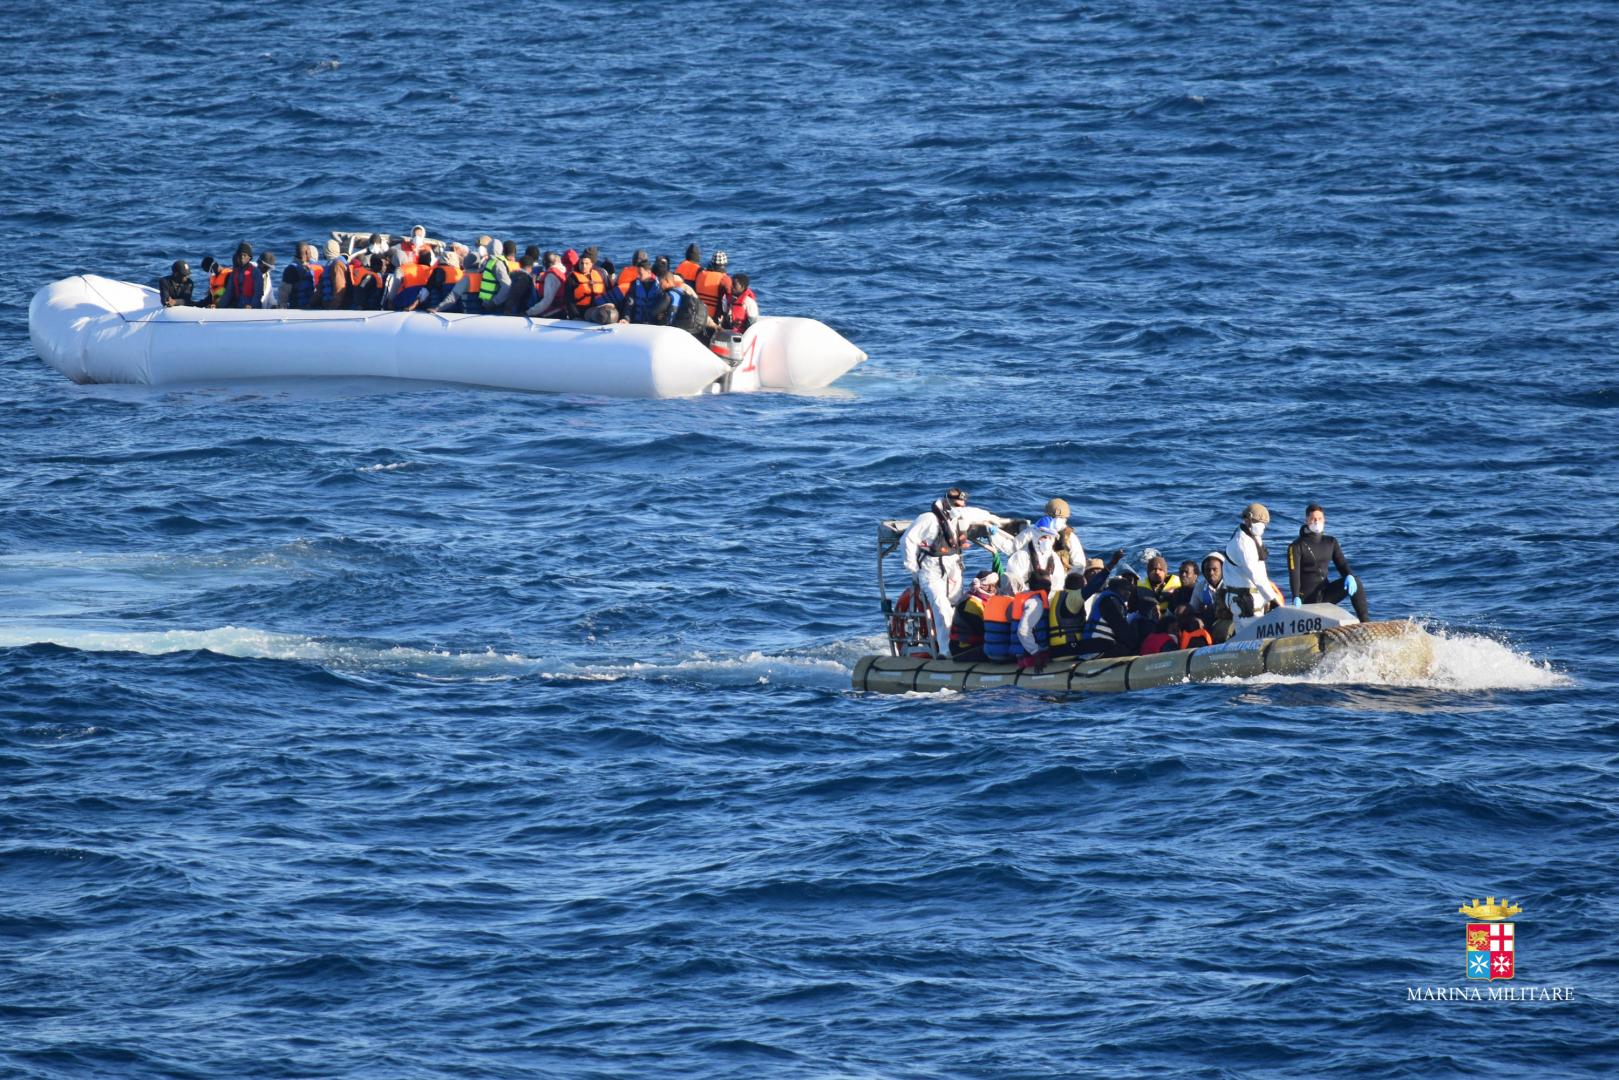 Marina Militare 214 migranti soccorsi